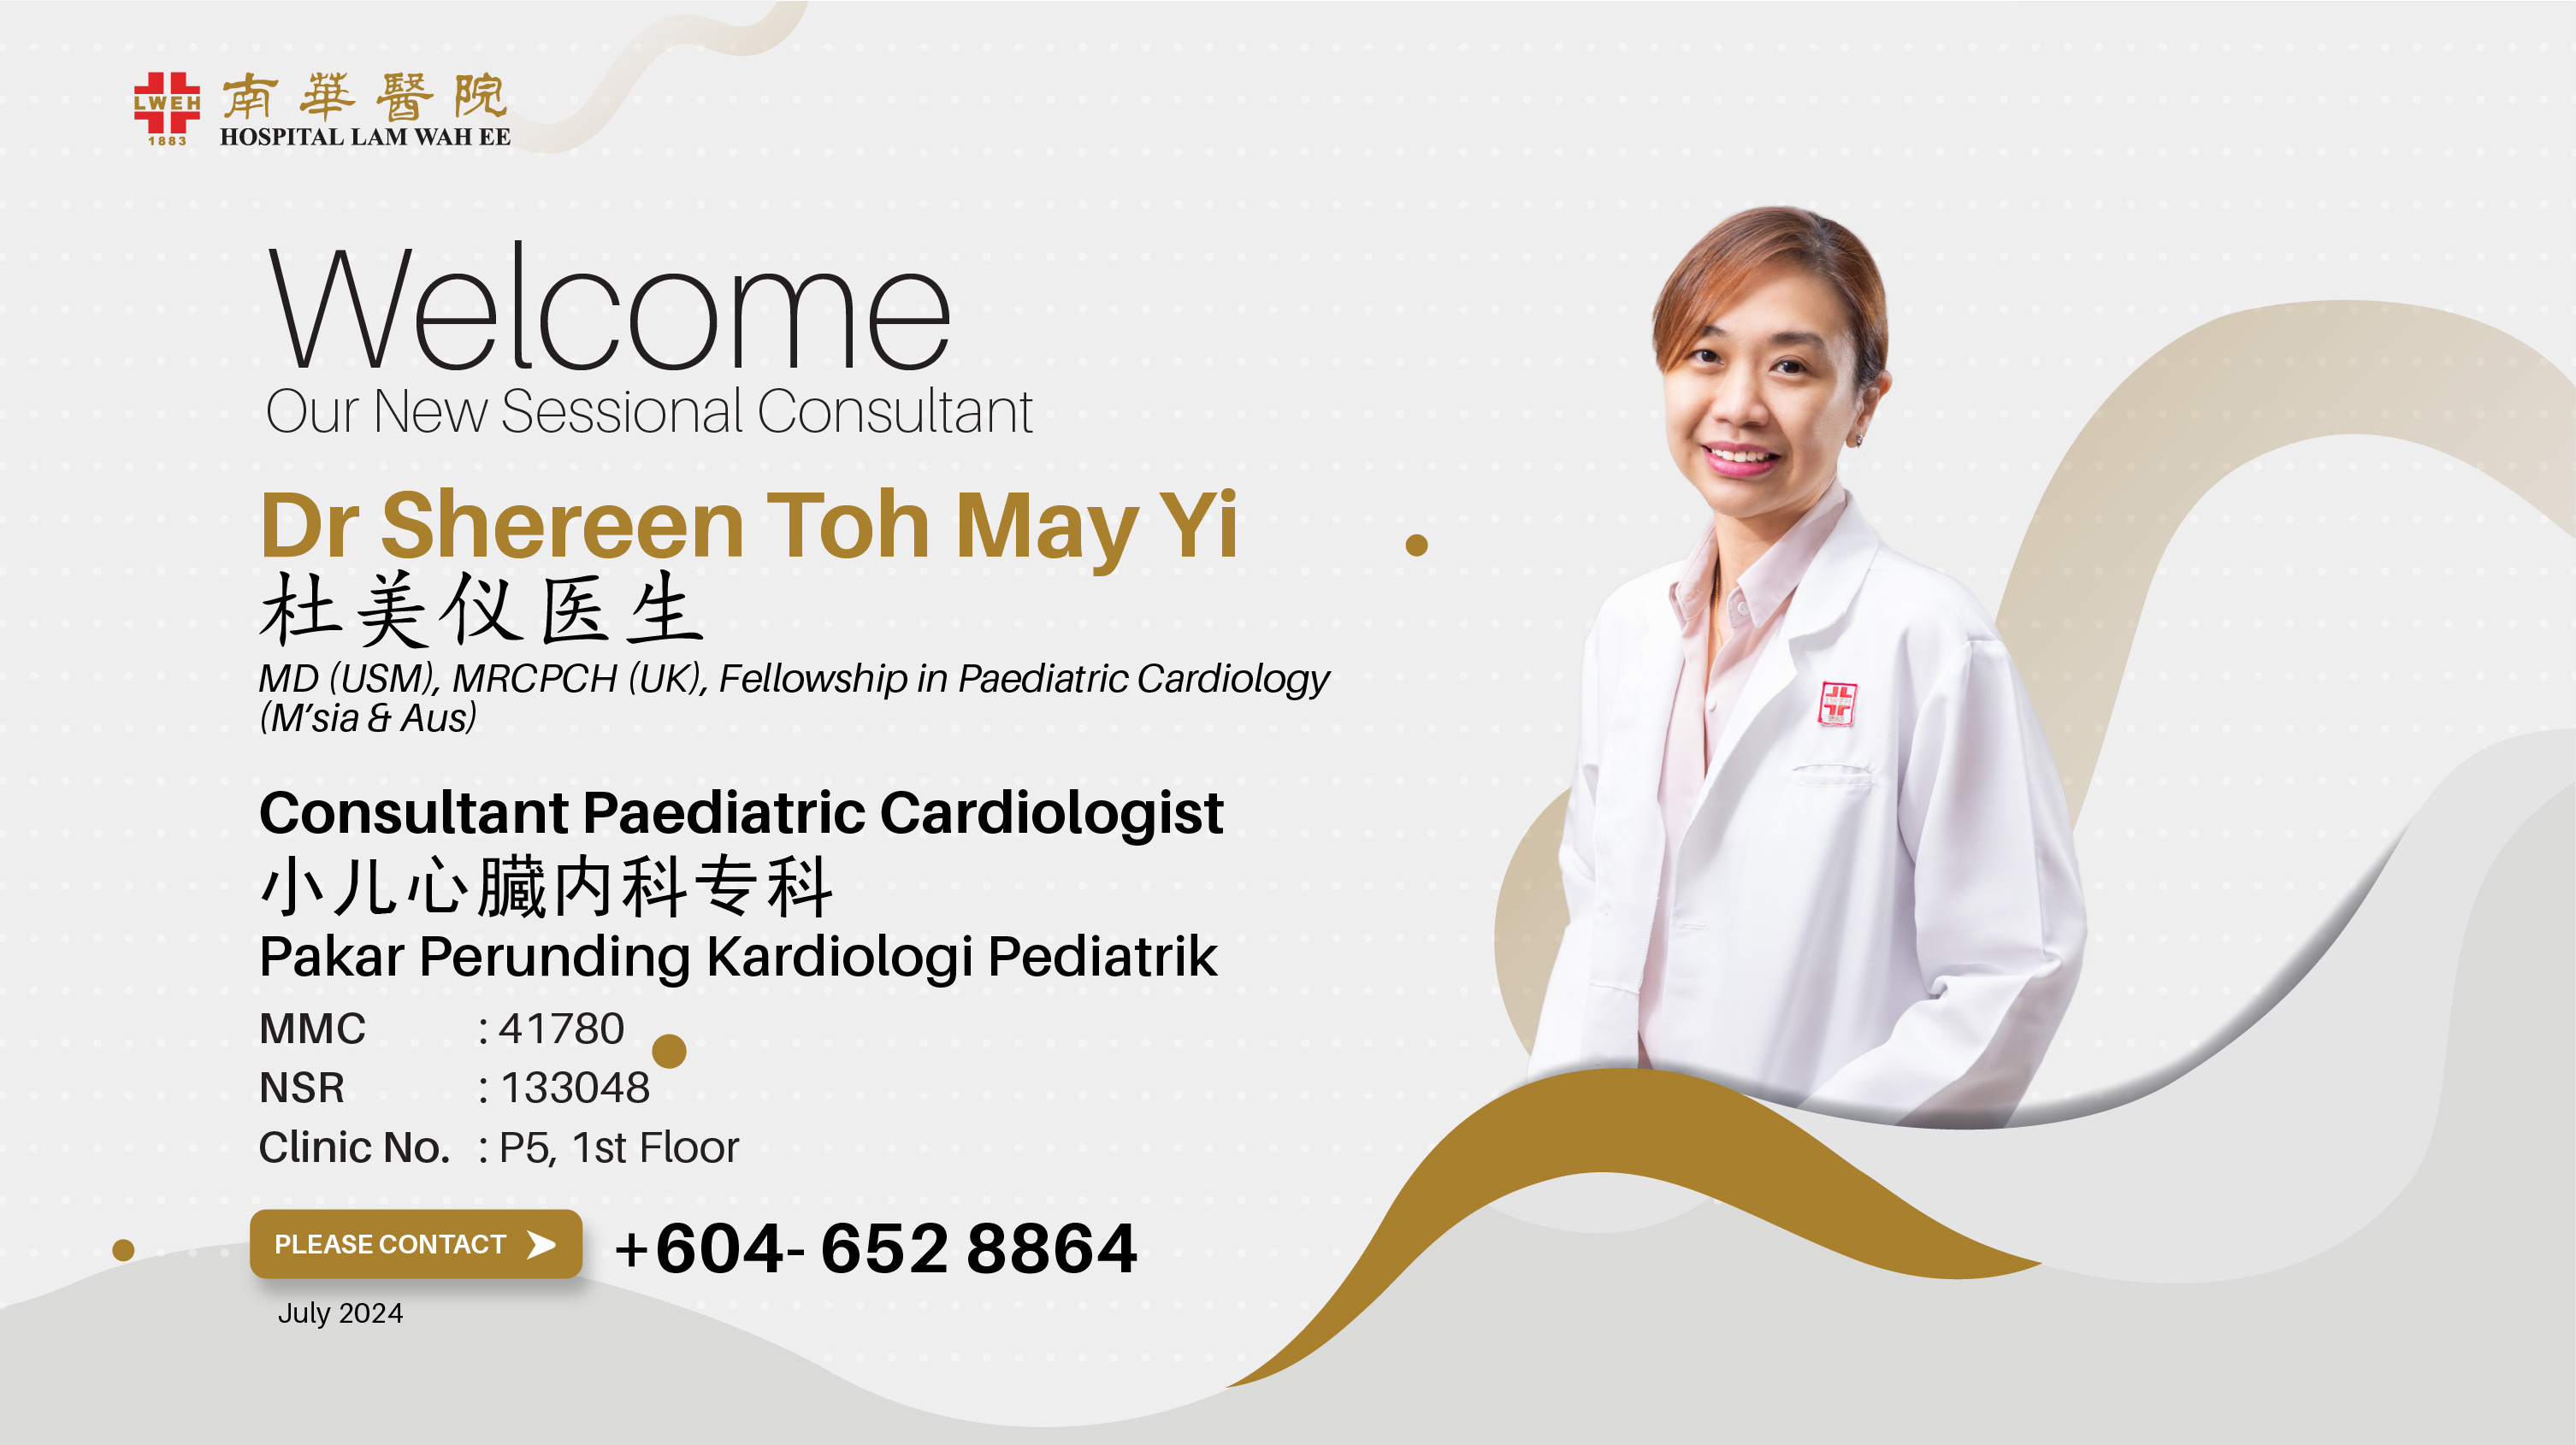 Dr Shereen Toh May Yi